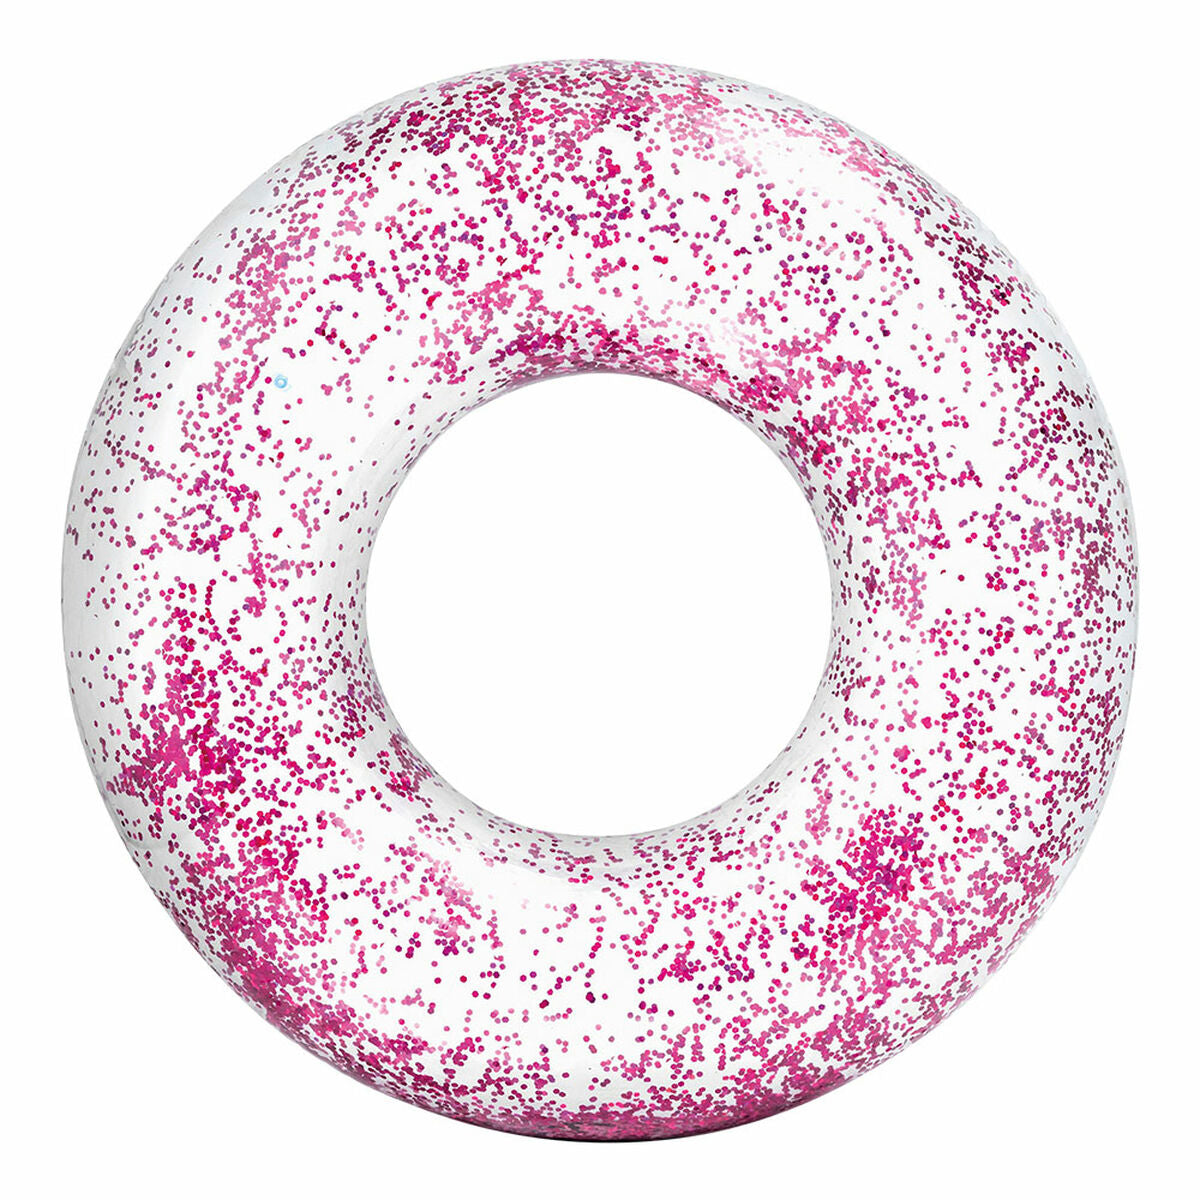 Salvagente Gonfiabile Donut Intex Trasparente Porporina  119 cm (6 Unità) - Disponibile in 3-4 giorni lavorativi